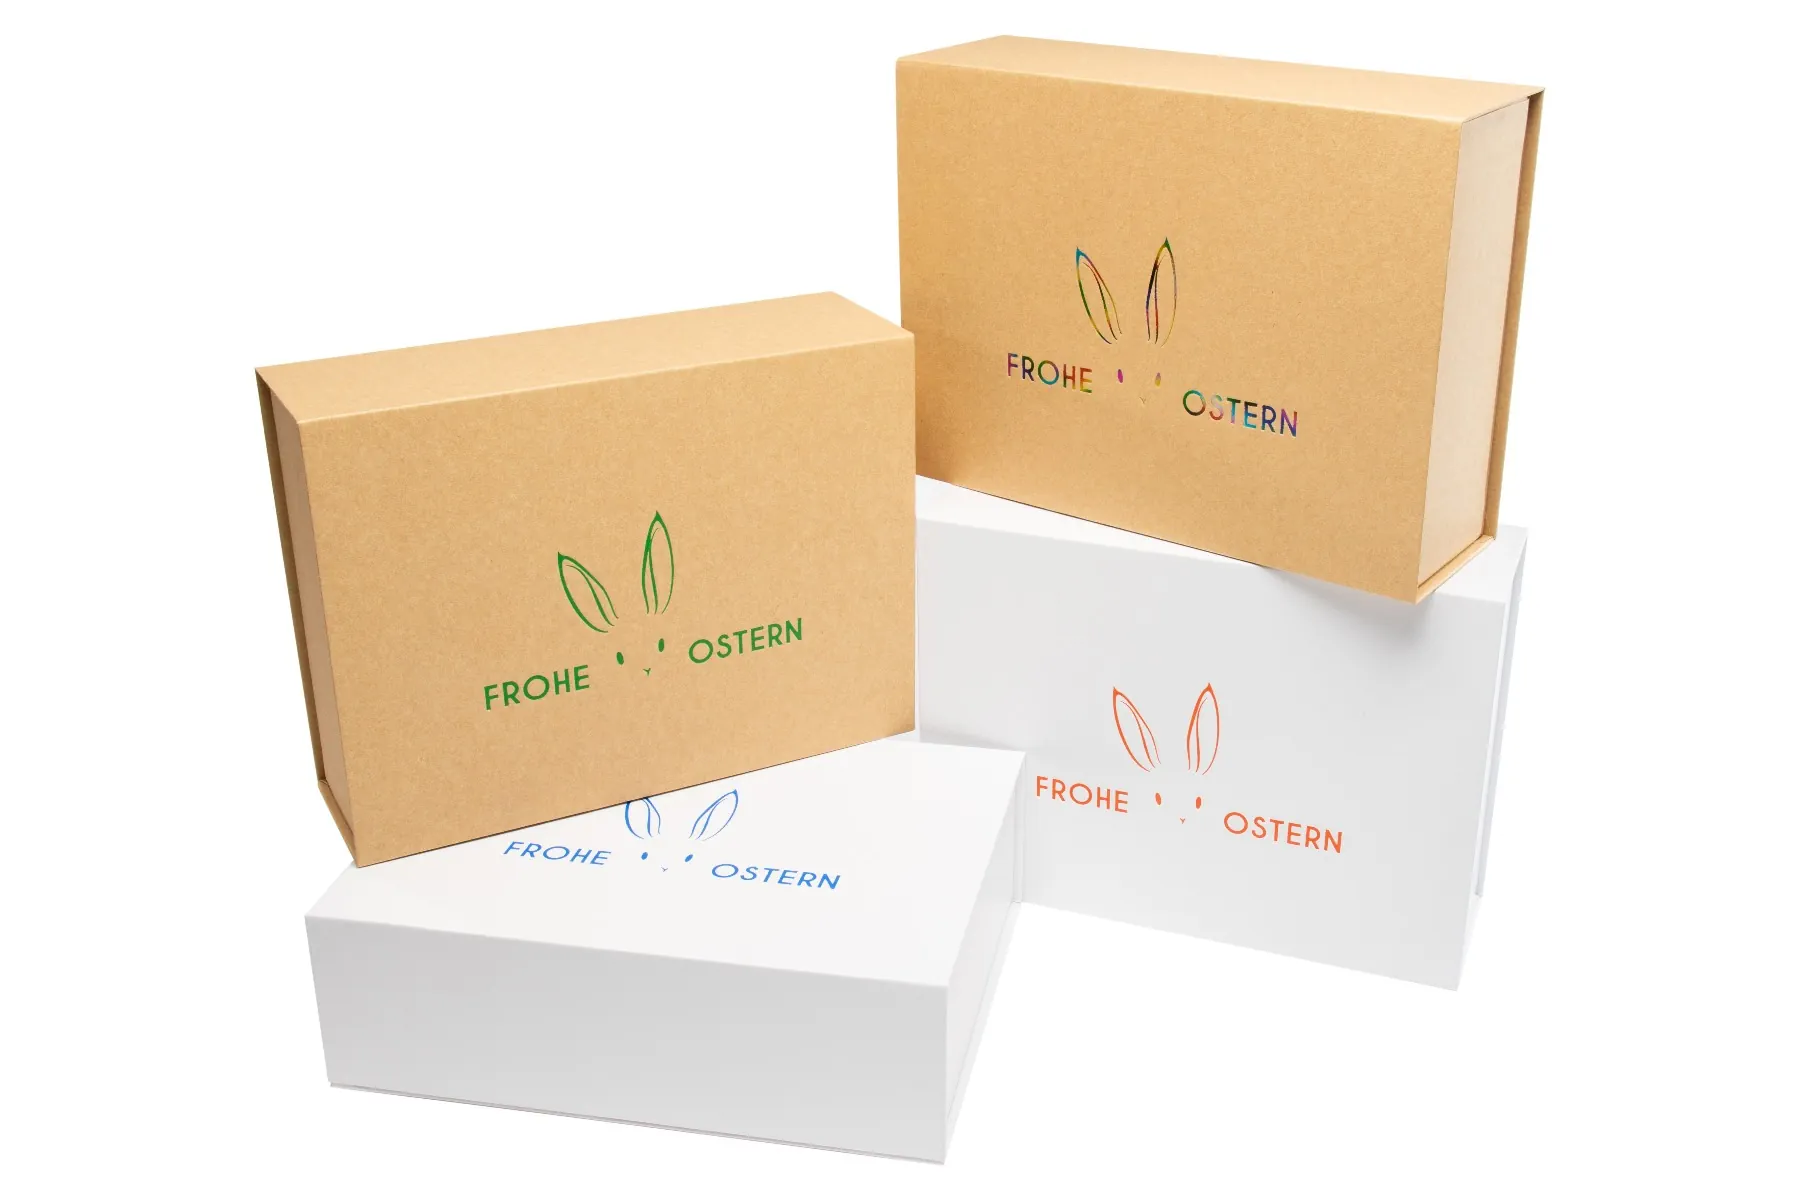 Magnetbox Weiß - Geschenk Box kaufen - 5ive-shop